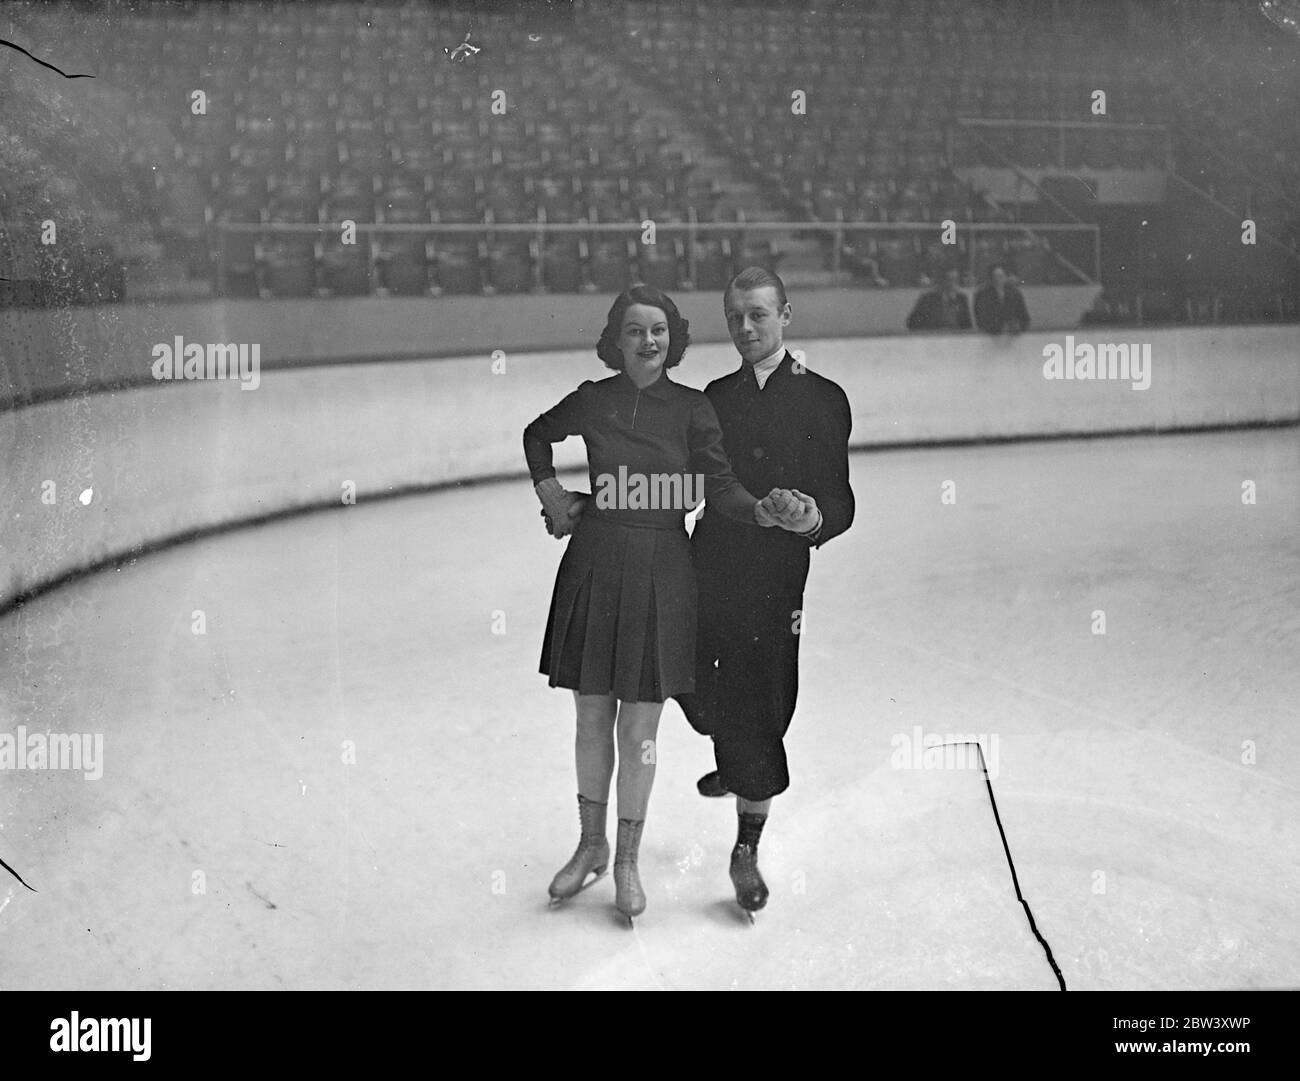 London Schauspielerin geht Skaten, um fit zu halten. Miss Dorothy Oldfield, die Filmschauspielerin, die jetzt in der Wiederbelebung von "The Squeaker" im Strand Theatre auftritt, hat das Skaten als Mittel der Erhaltung der Passform aufgenommen. Miss Oldfield wird von Larry Richards, dem Harringay Areana Profi, auf dem Eis tanzen beigebracht. 13 März 1937 Stockfoto